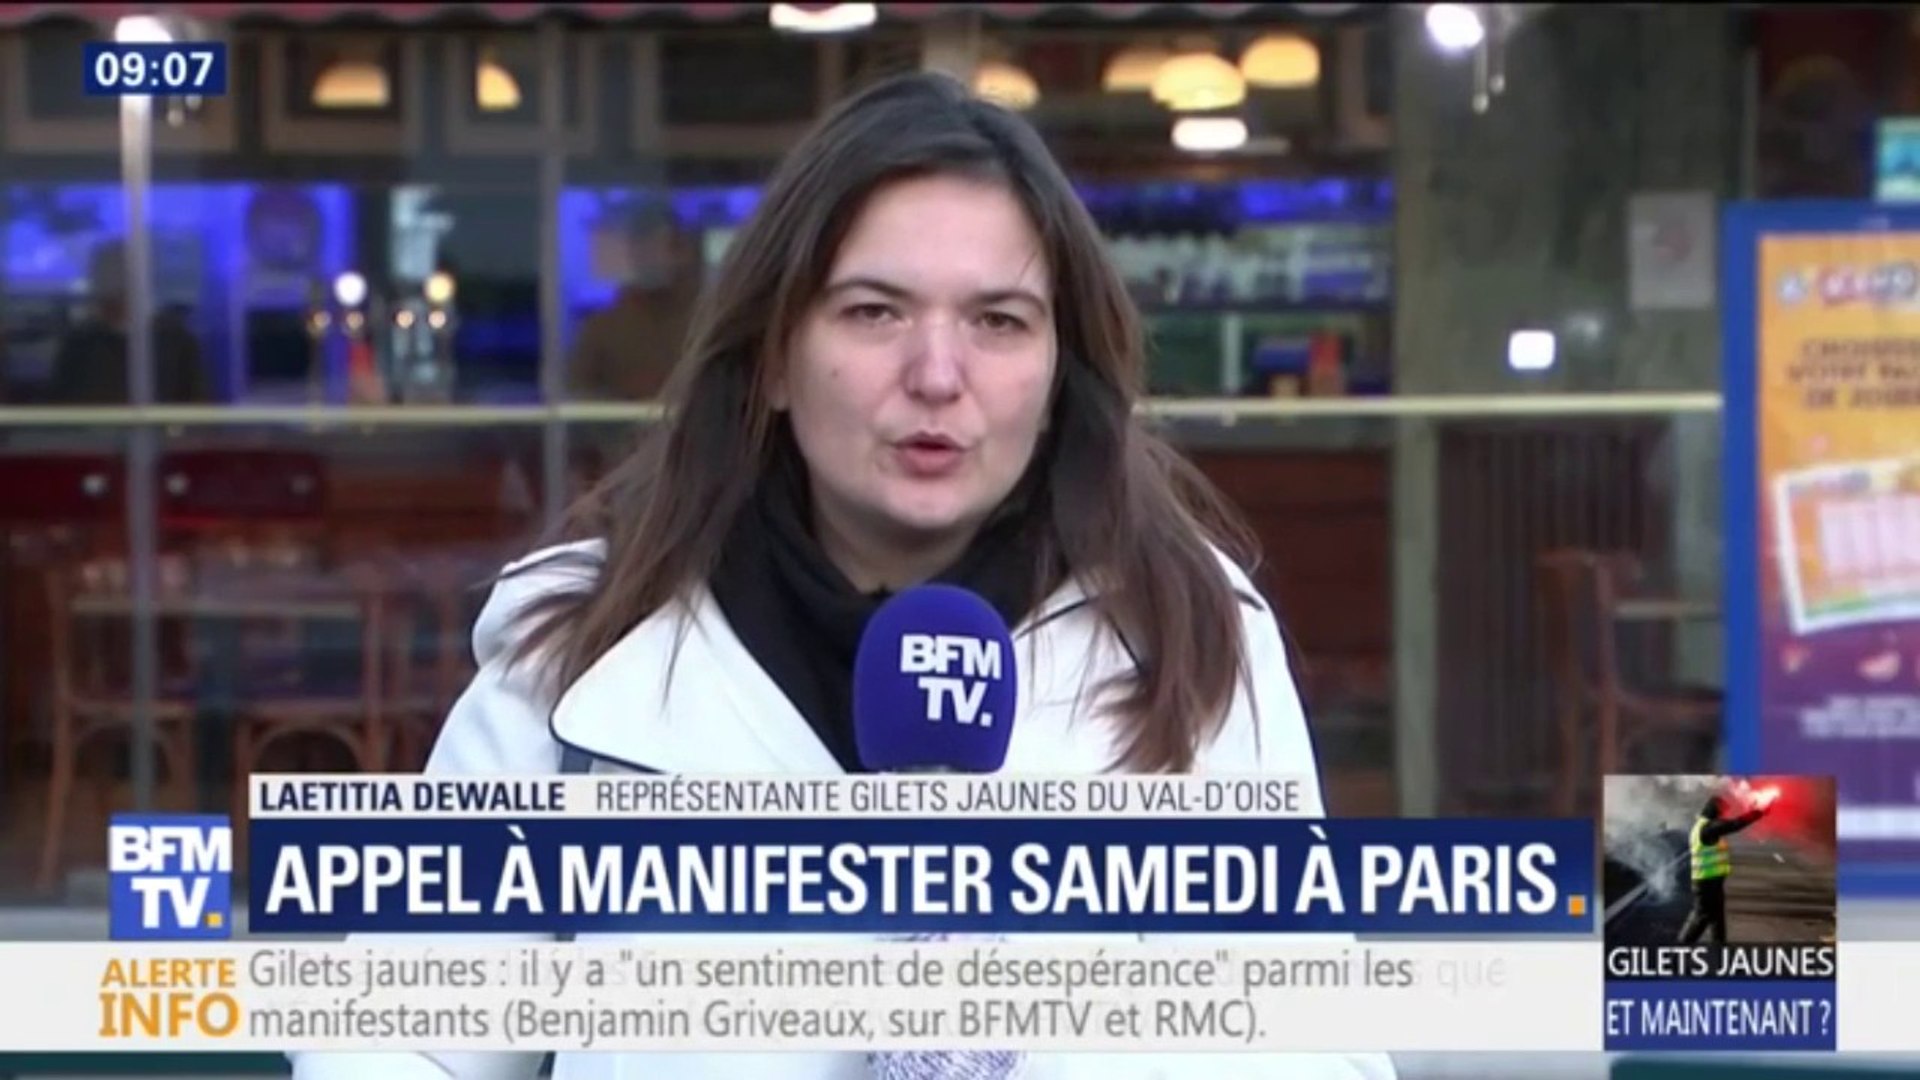 La représentante des Gilets jaunes du Val d'Oise assure qu'il "n'y a pas de  blocages de prévu" au niveau du département - Vidéo Dailymotion